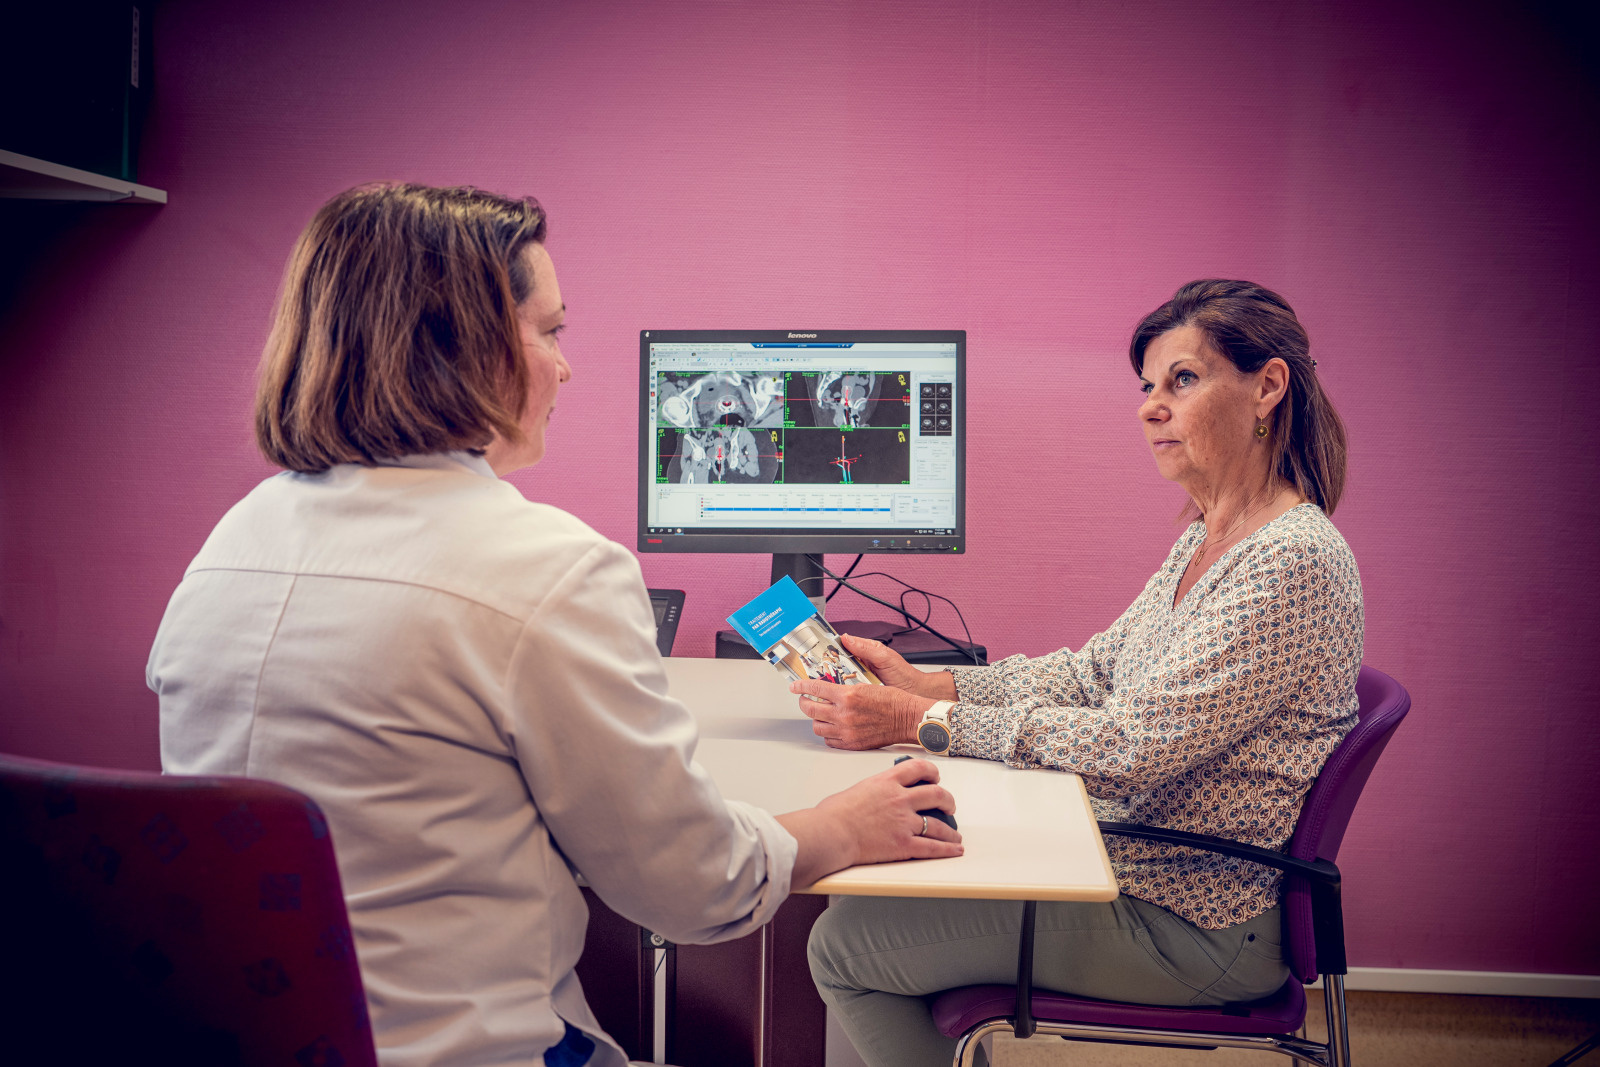 Entretien entre la radio-oncologue et une patiente avant une curiethérapie